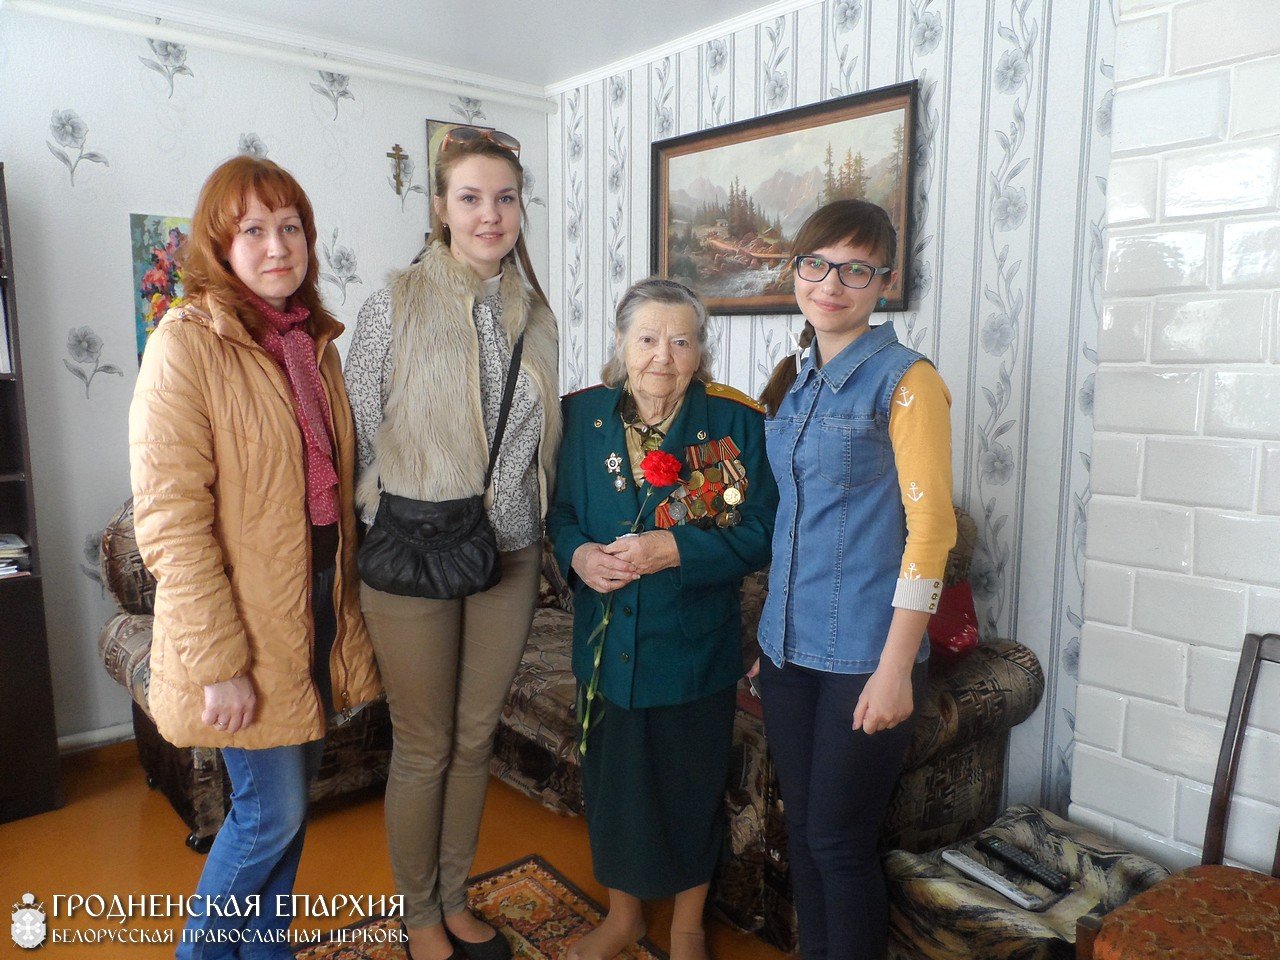 Накануне праздника победы братчики Скиделя посетили ветеранов